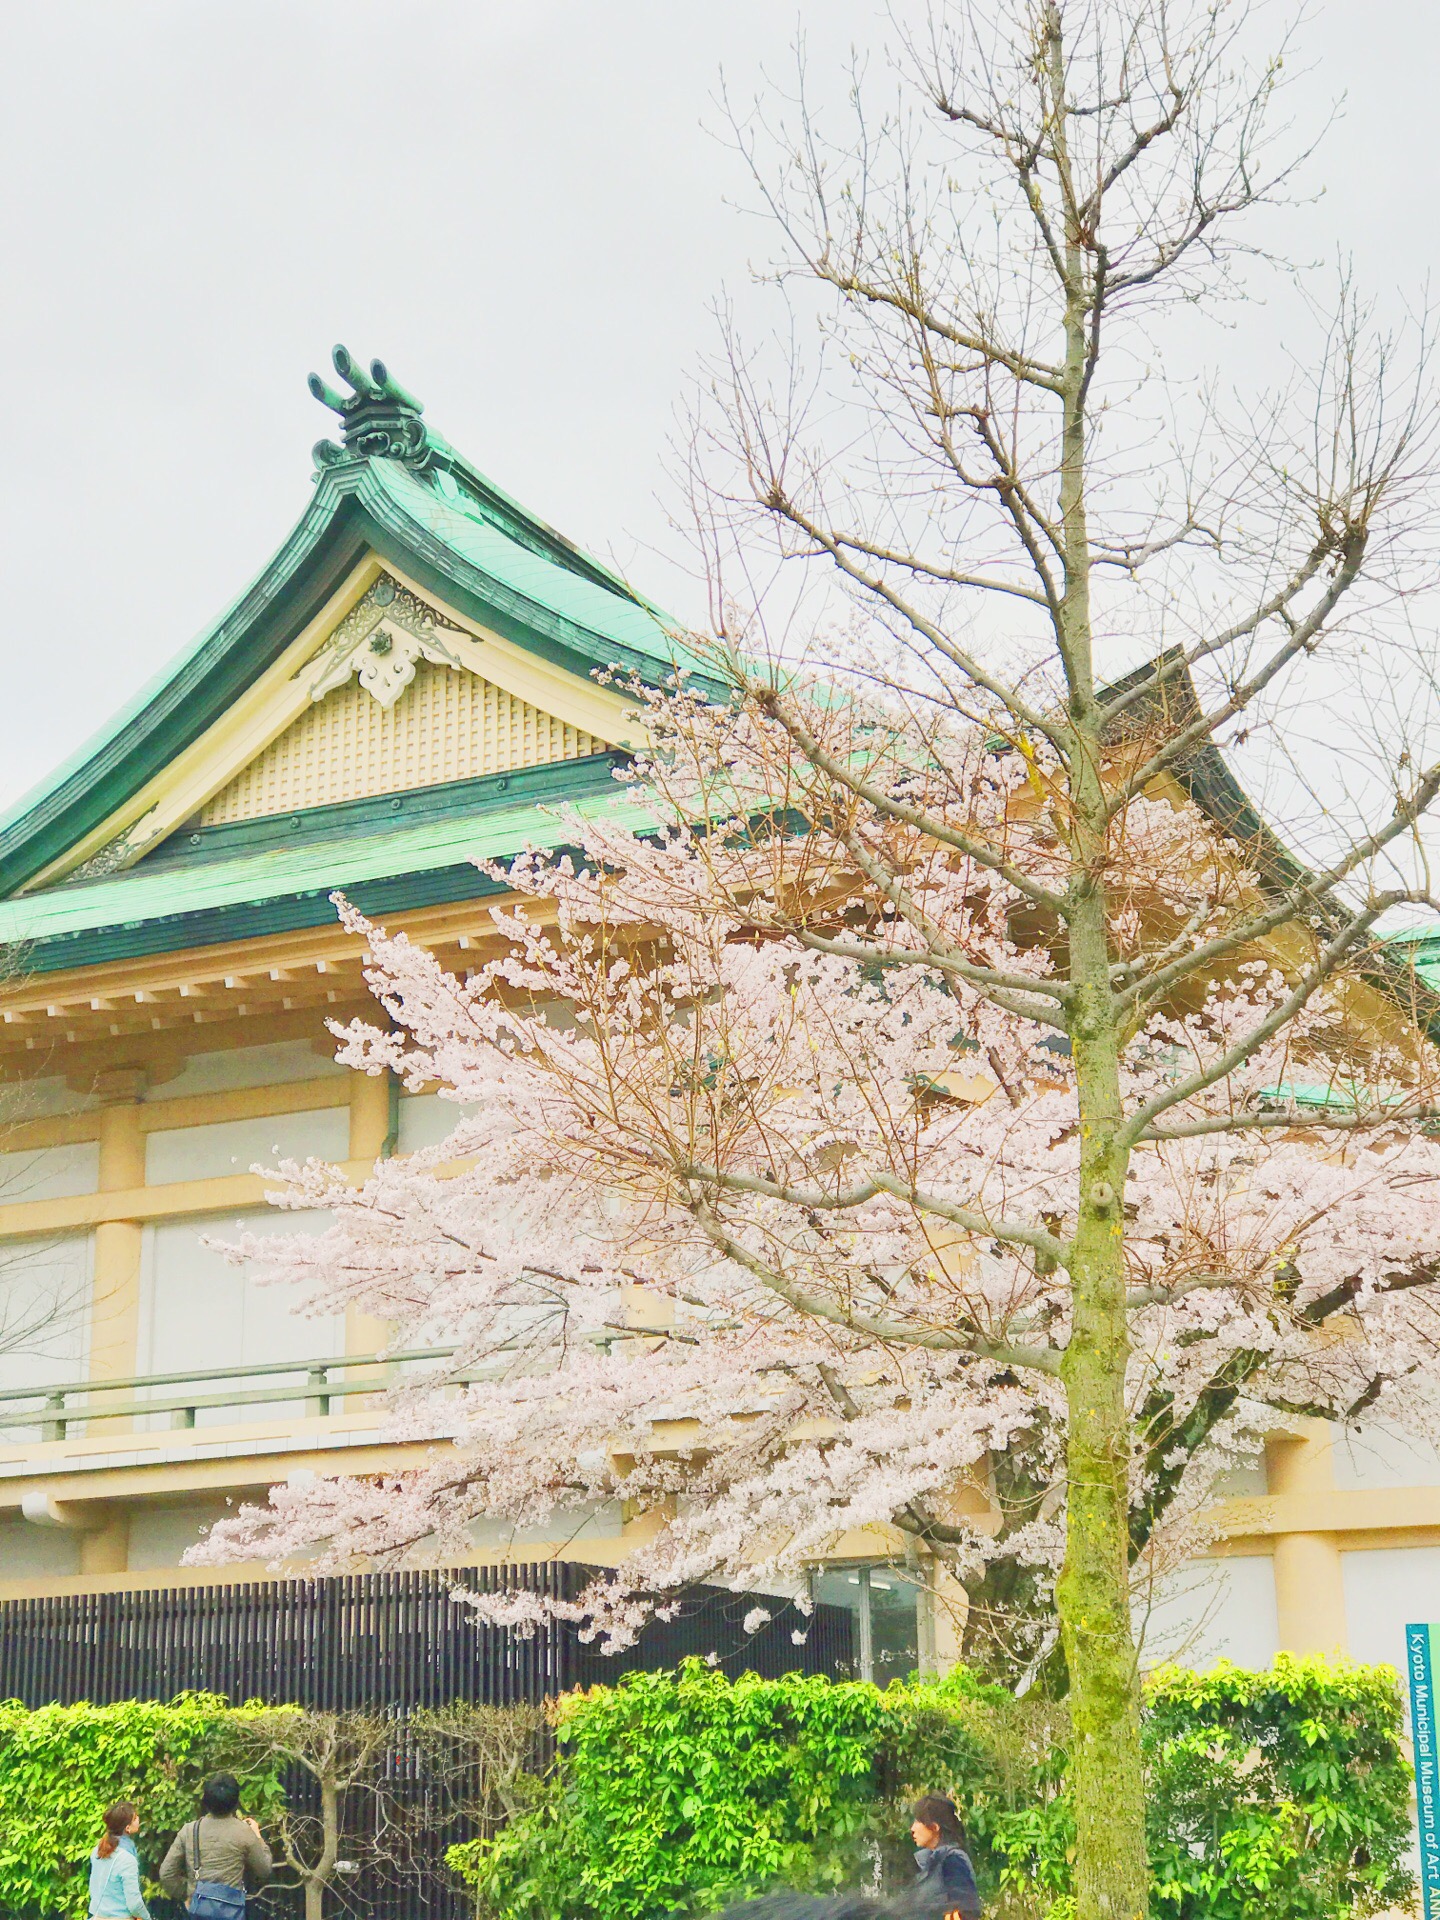 京都小众赏樱•拍照地|冈崎公园 在人山人海的京都樱花季想要照出一张只有自己，没有别人“合照”的照片真